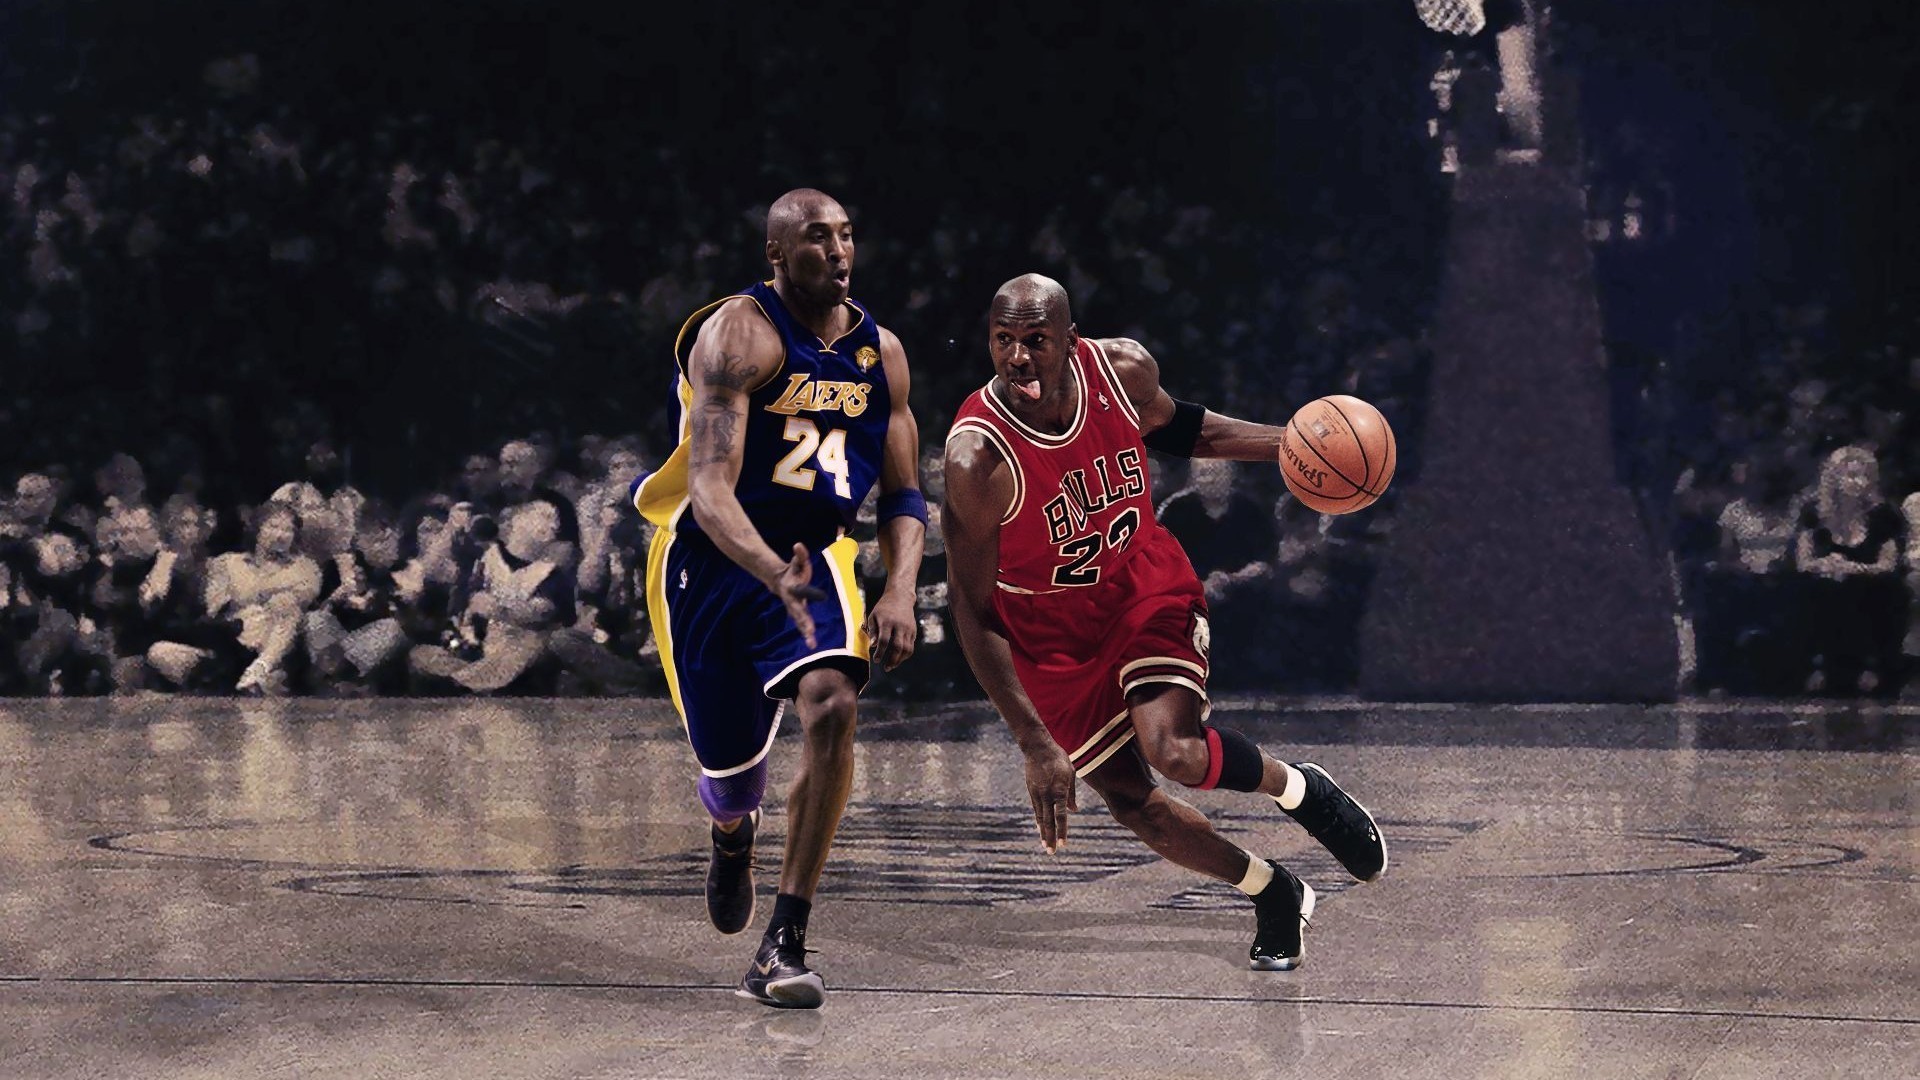 Basketball Desktop Backgrounds (58+ images)